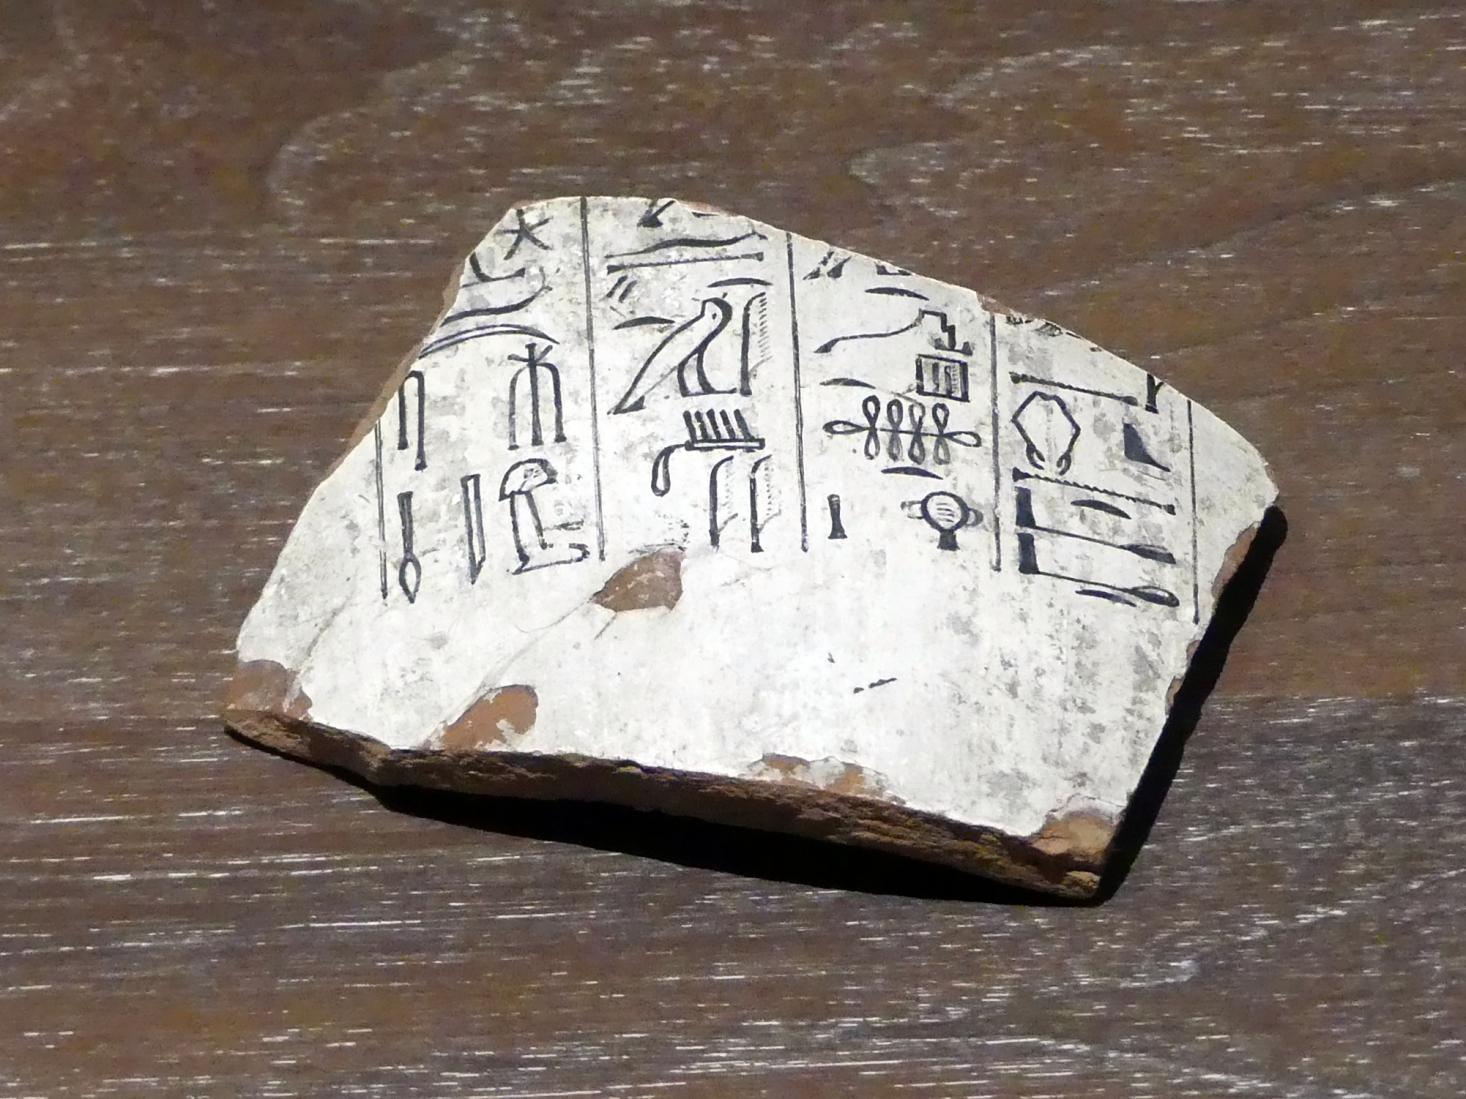 Teil einer Kanope (Eingeweidekrug) mit Gebet in hieroglyphischer Schreibung, 19. Dynastie, 966 - 859 v. Chr., 1200 v. Chr.